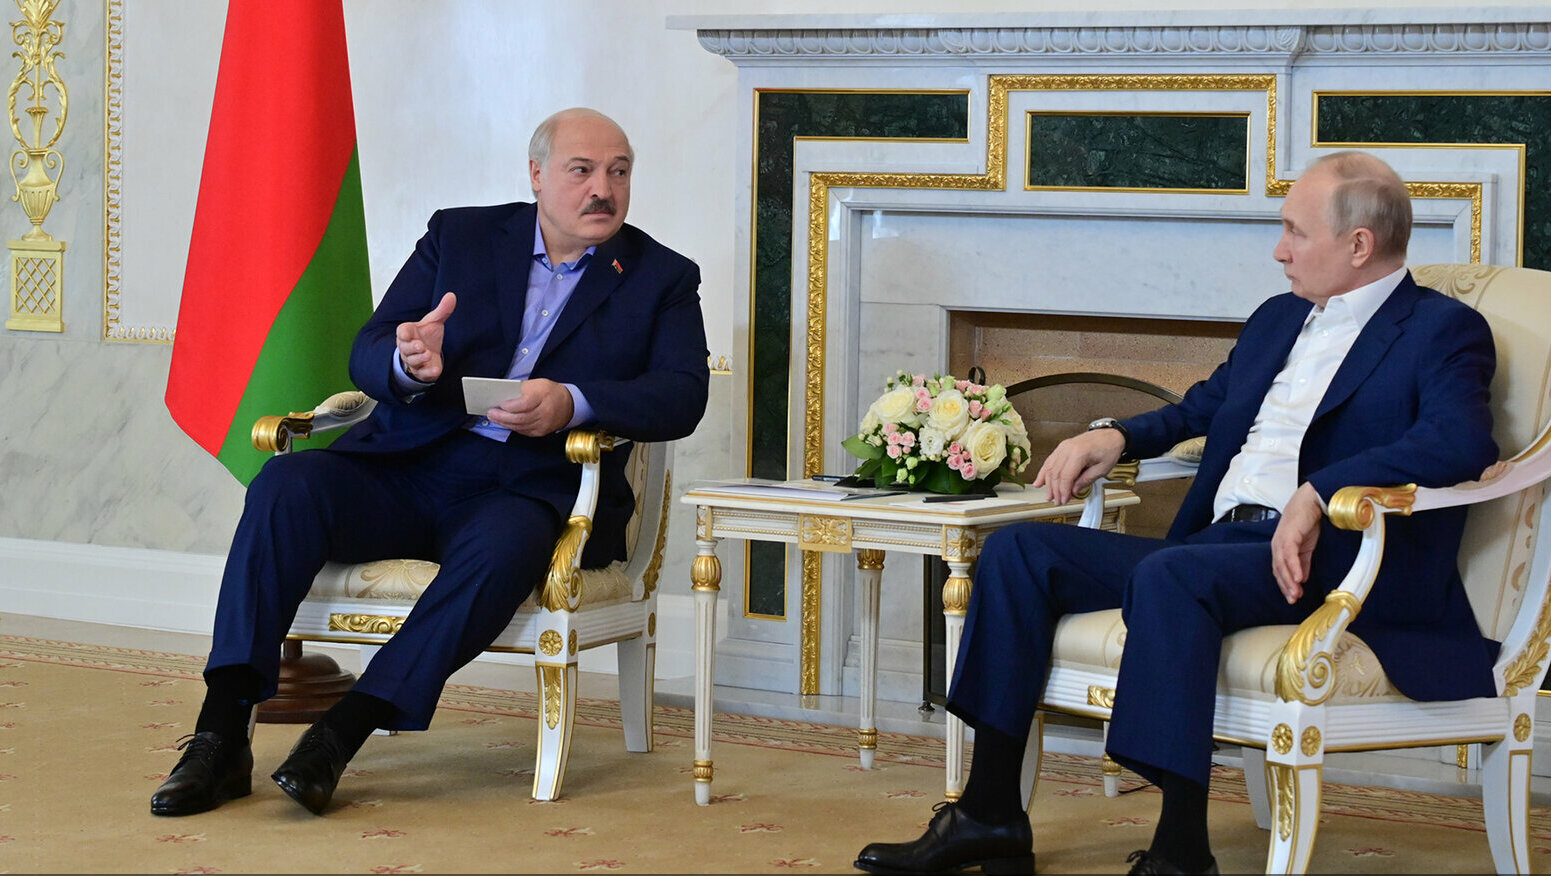 Путин и Лукашенко обсудили мир с Украиной без «навязывания схем» по урегулированию